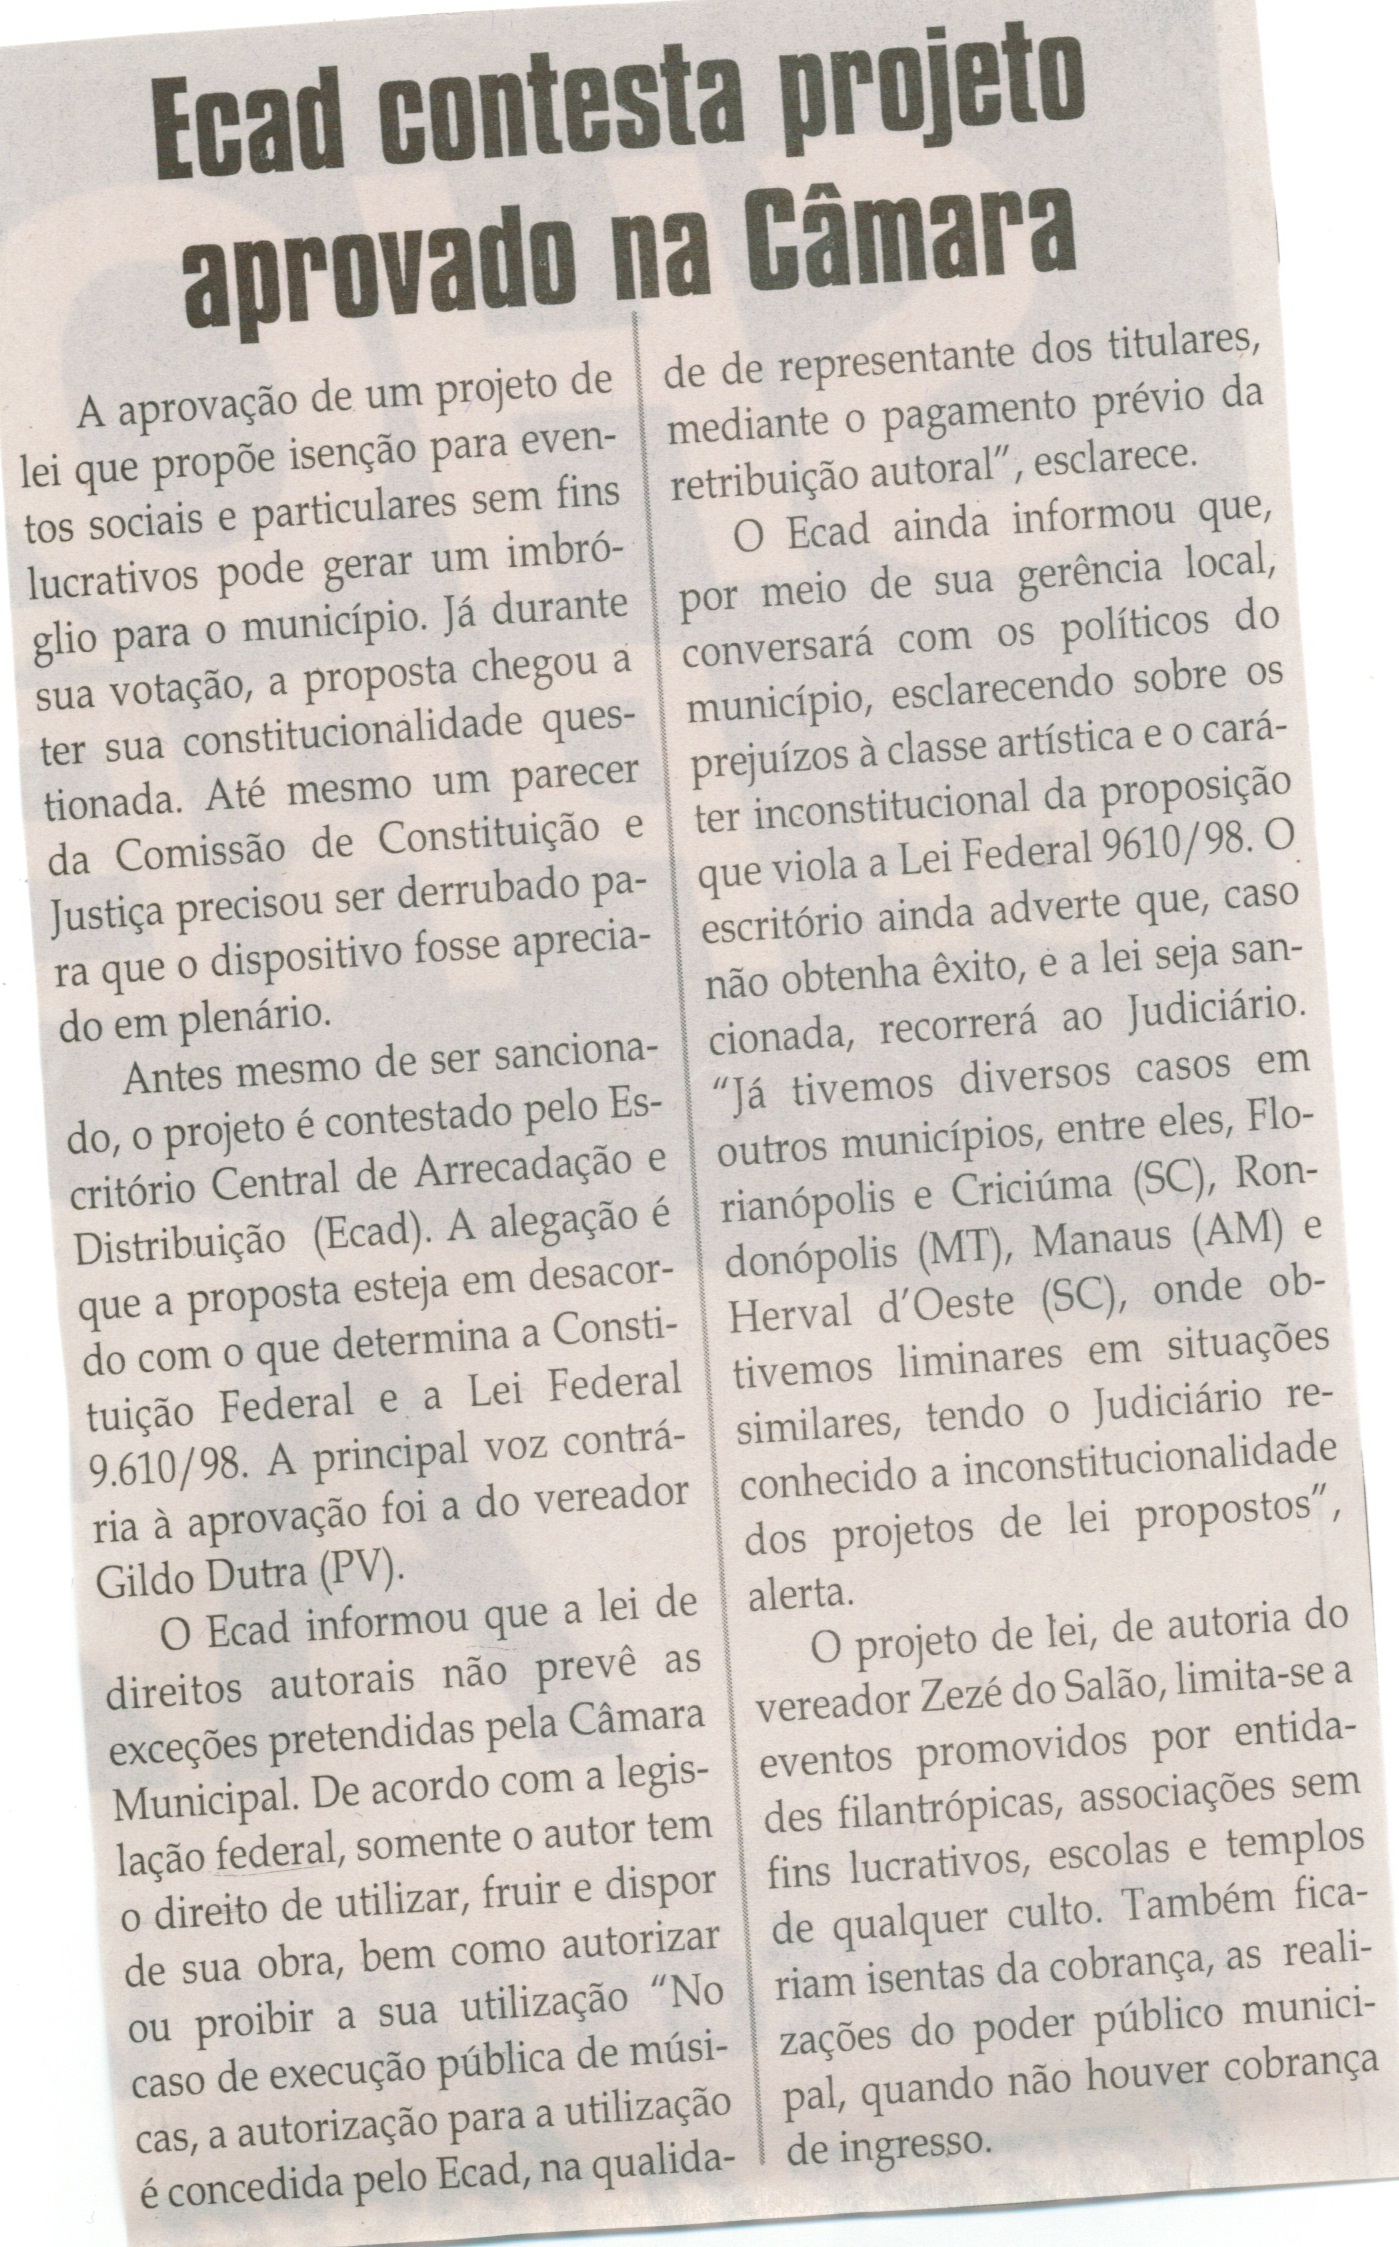 Ecad contesta projeto aprovado na Câmara. Jornal Correio da Cidade, Conselheiro Lafaiete,  03 out. 2014, p. 6.